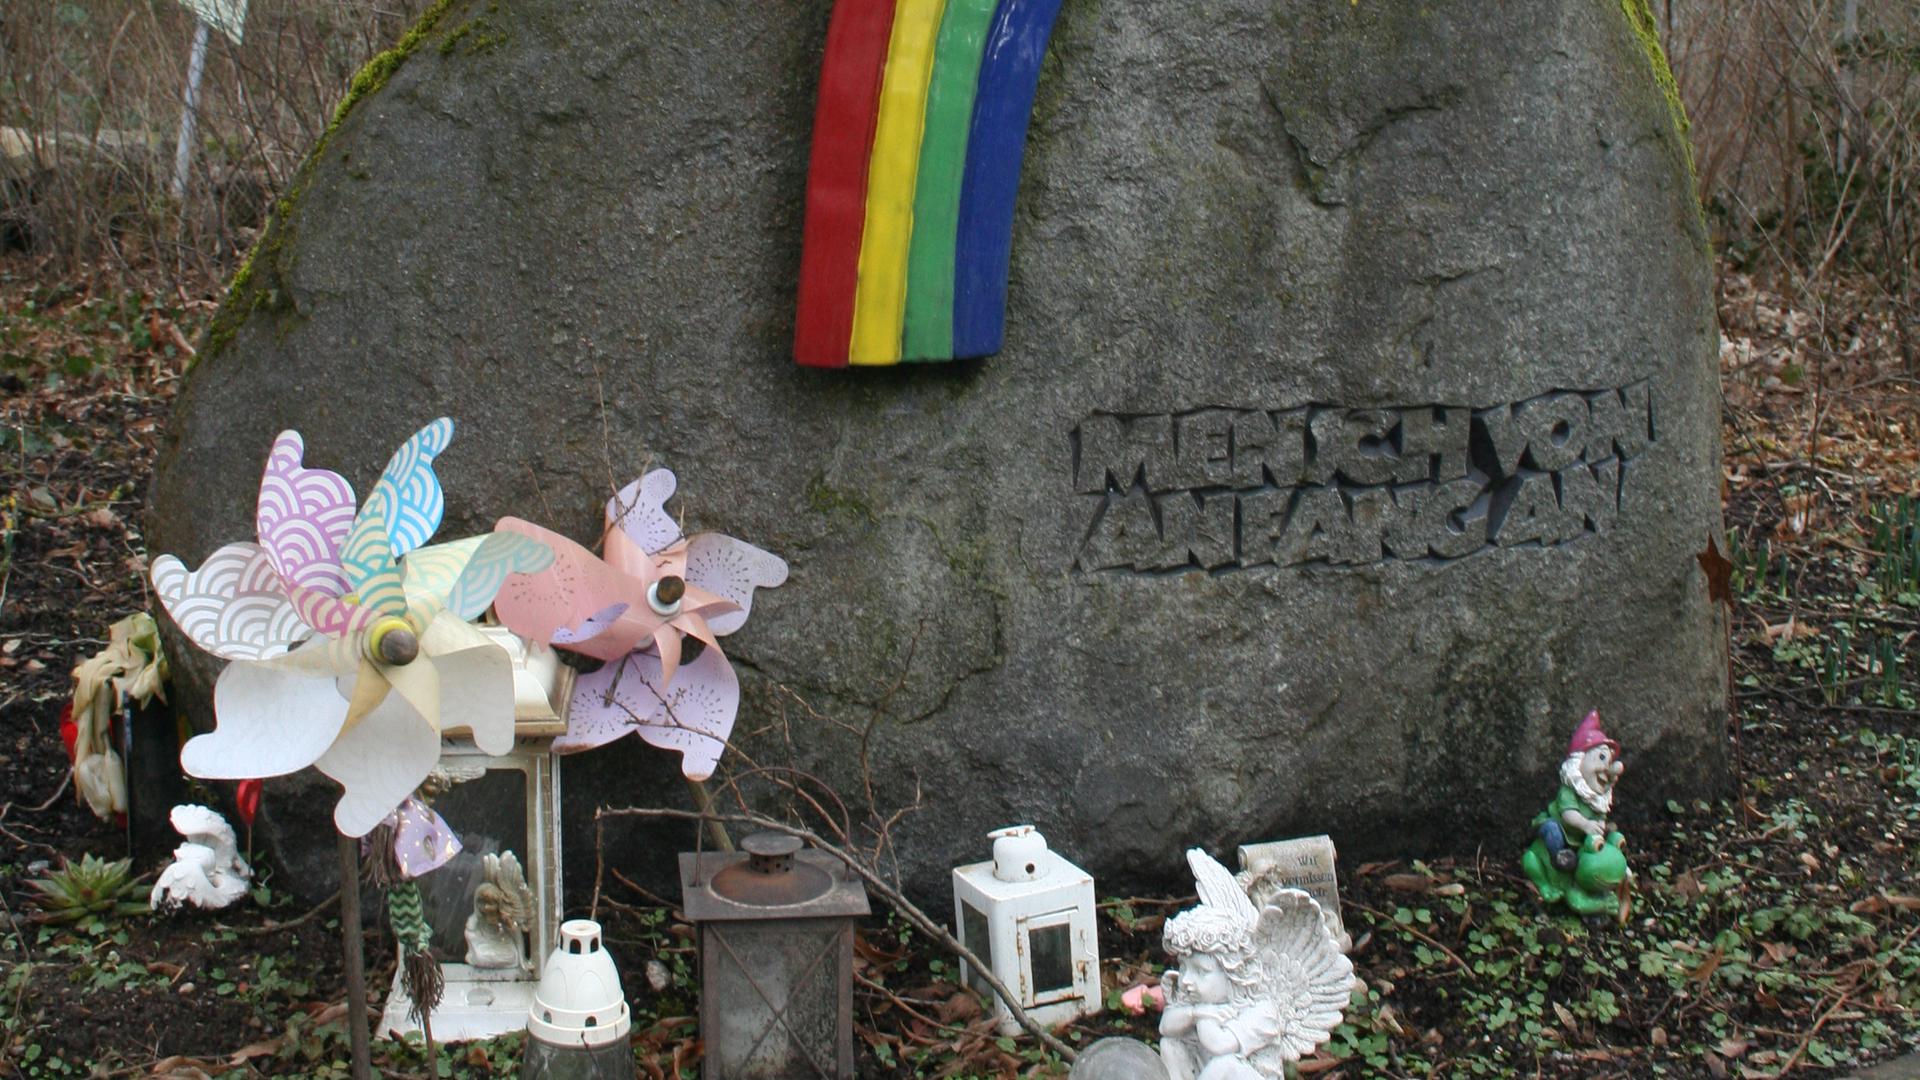 Naturstein mit Inschrift „Mensch von Anfang an“ mit Regenbogen